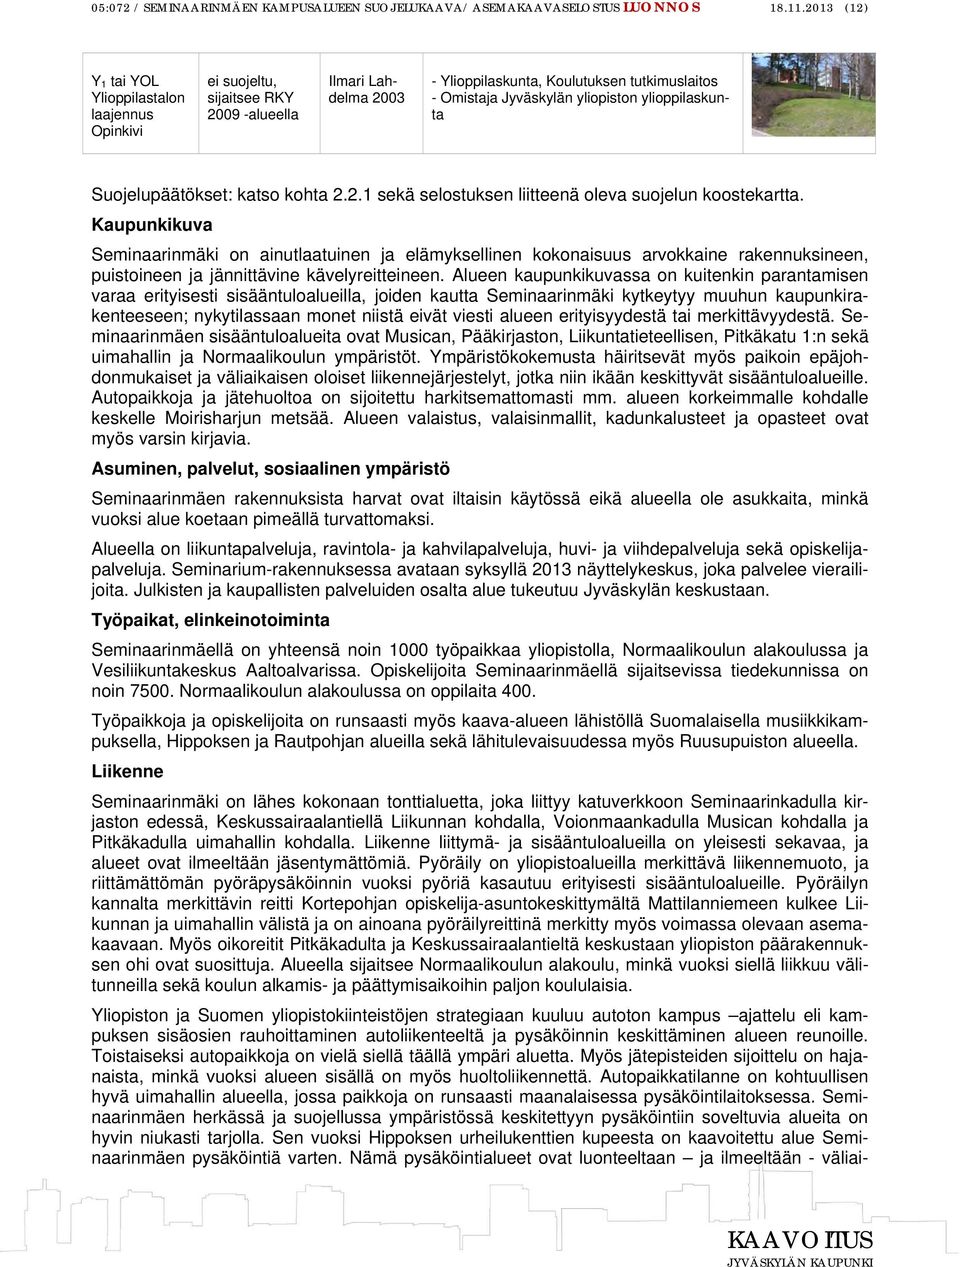 ylioppilaskunta Suojelupäätökset: katso kohta 2.2.1 sekä selostuksen liitteenä oleva suojelun koostekartta.